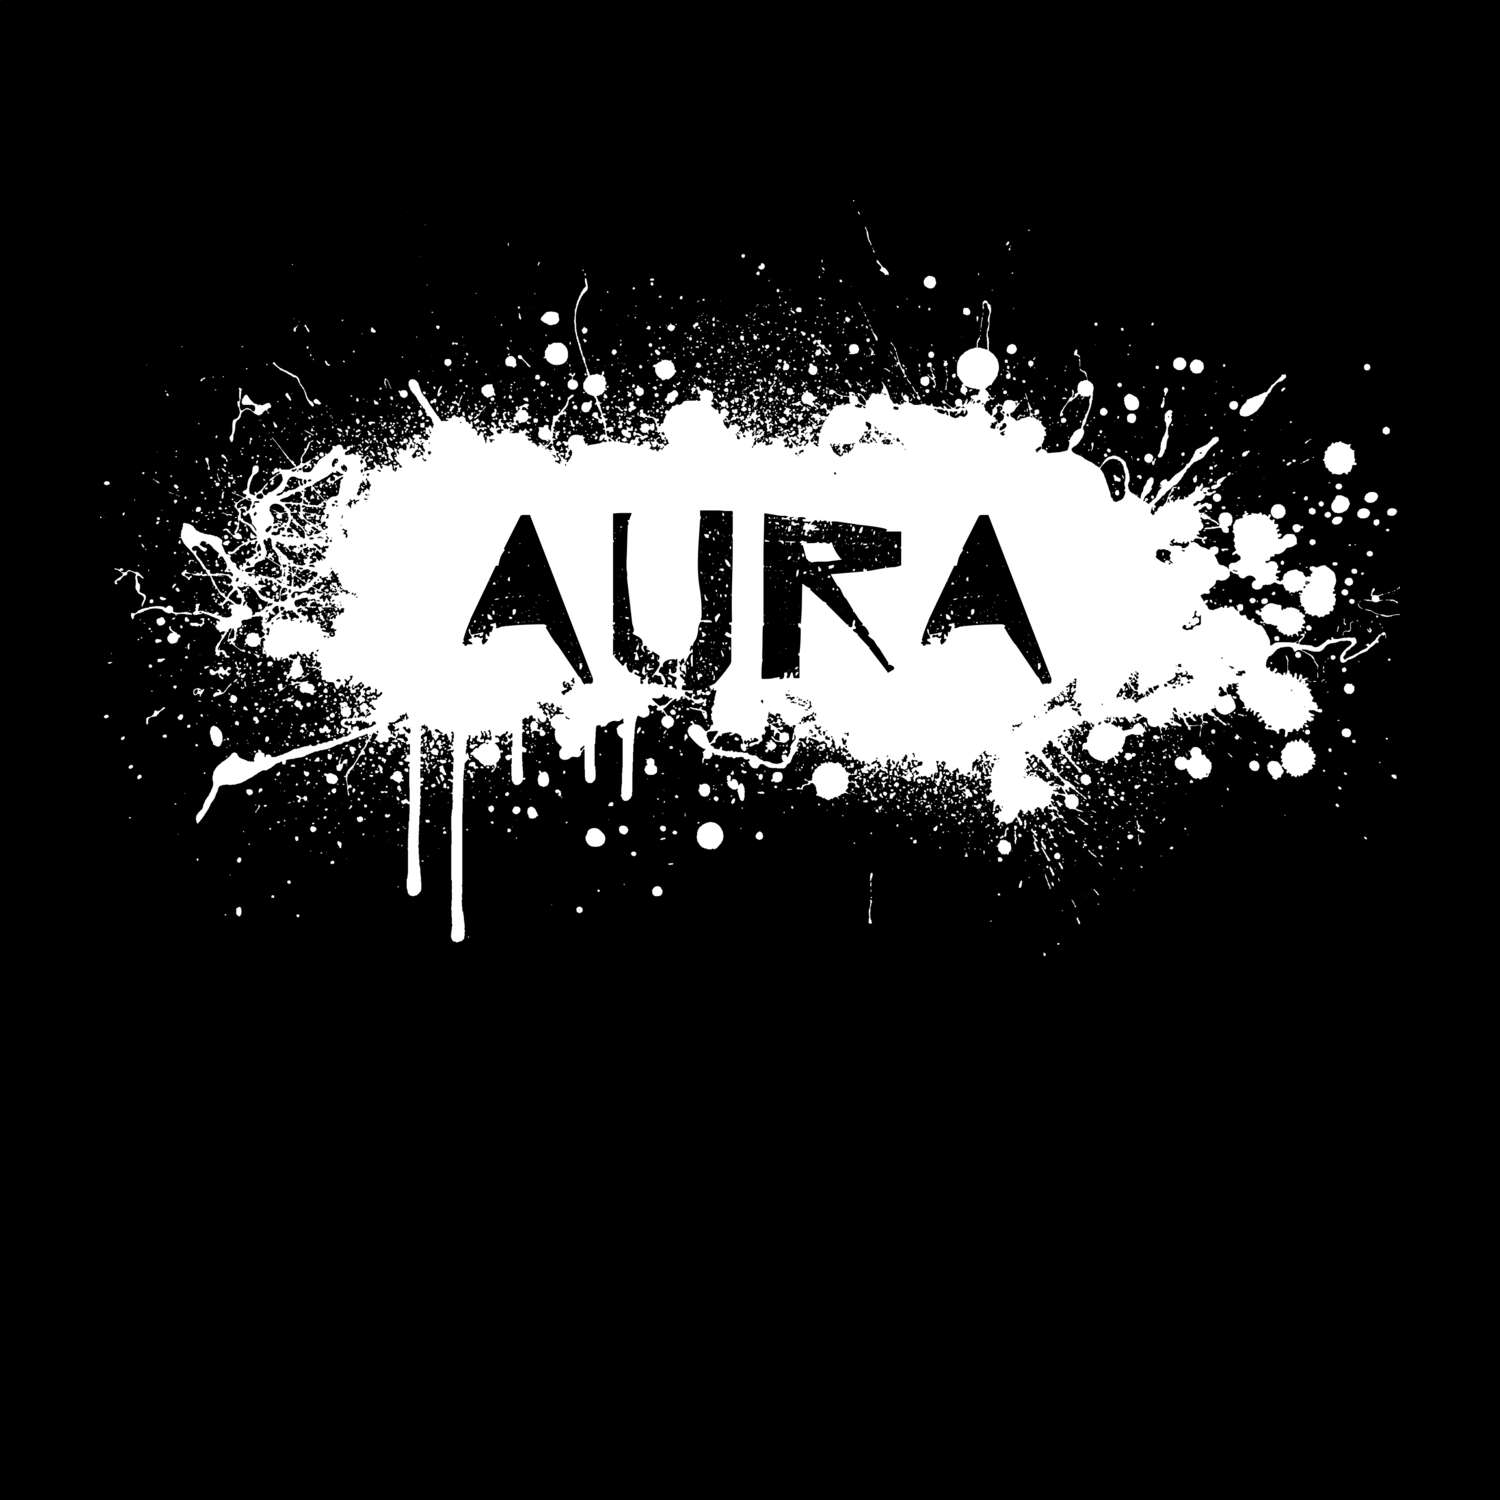 Aura T-Shirt »Paint Splash Punk«